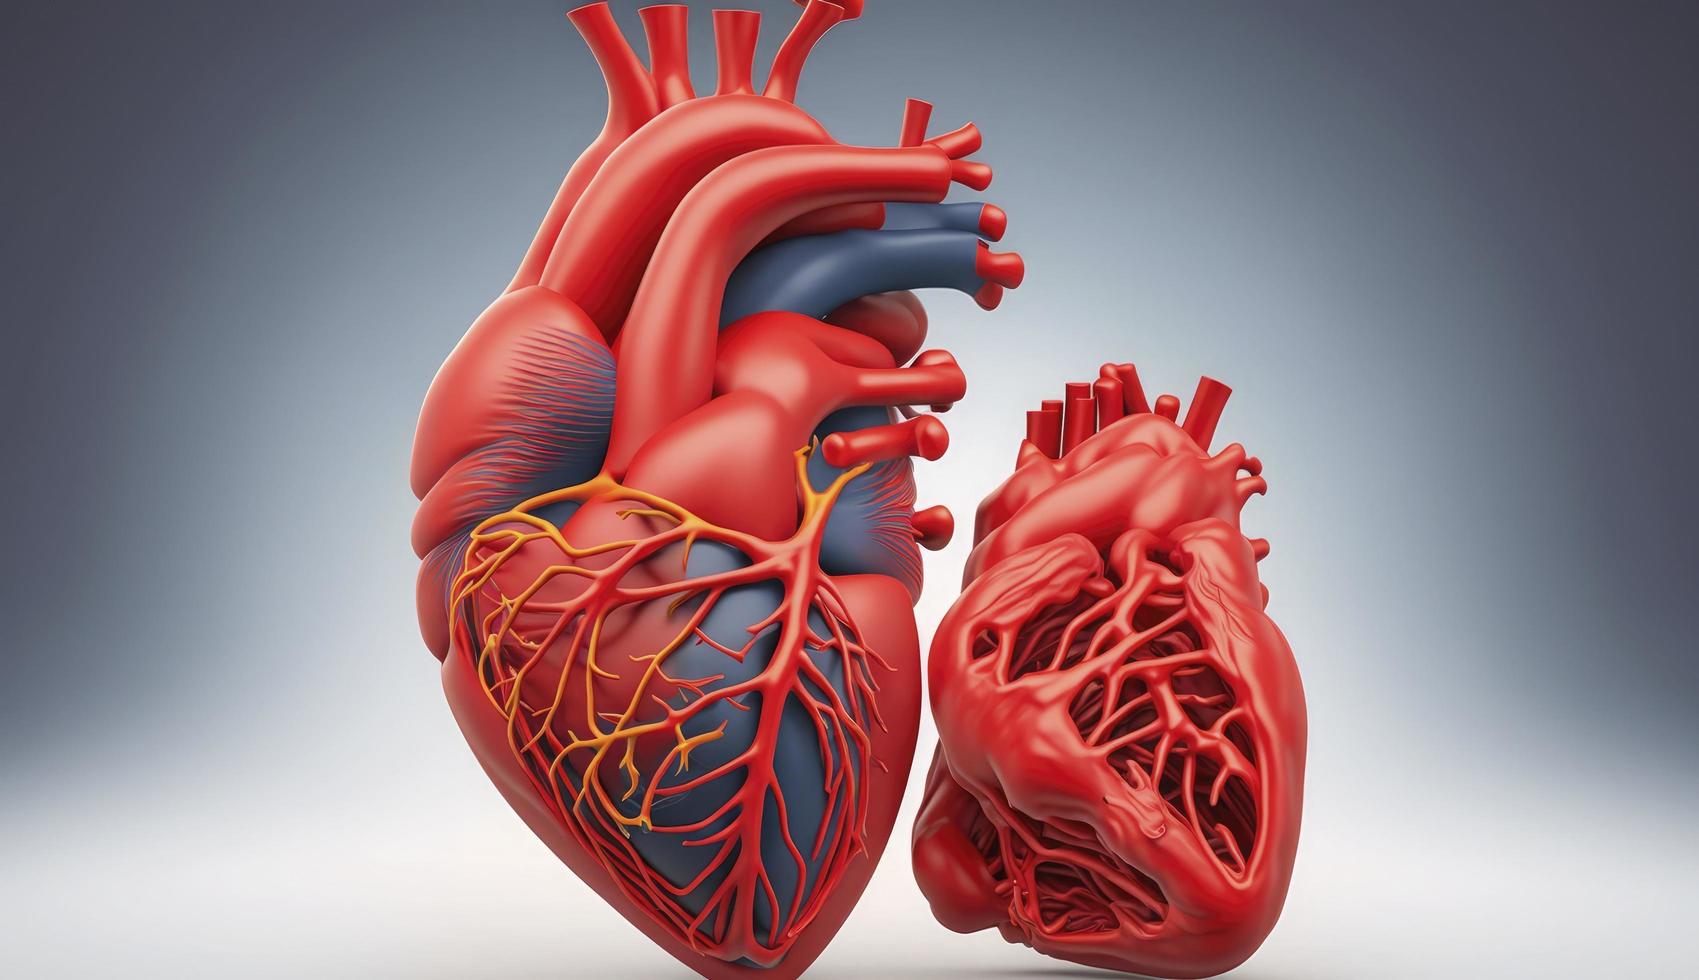 röd Färg, mänsklig hjärta trådmodell på vit bakgrund foto